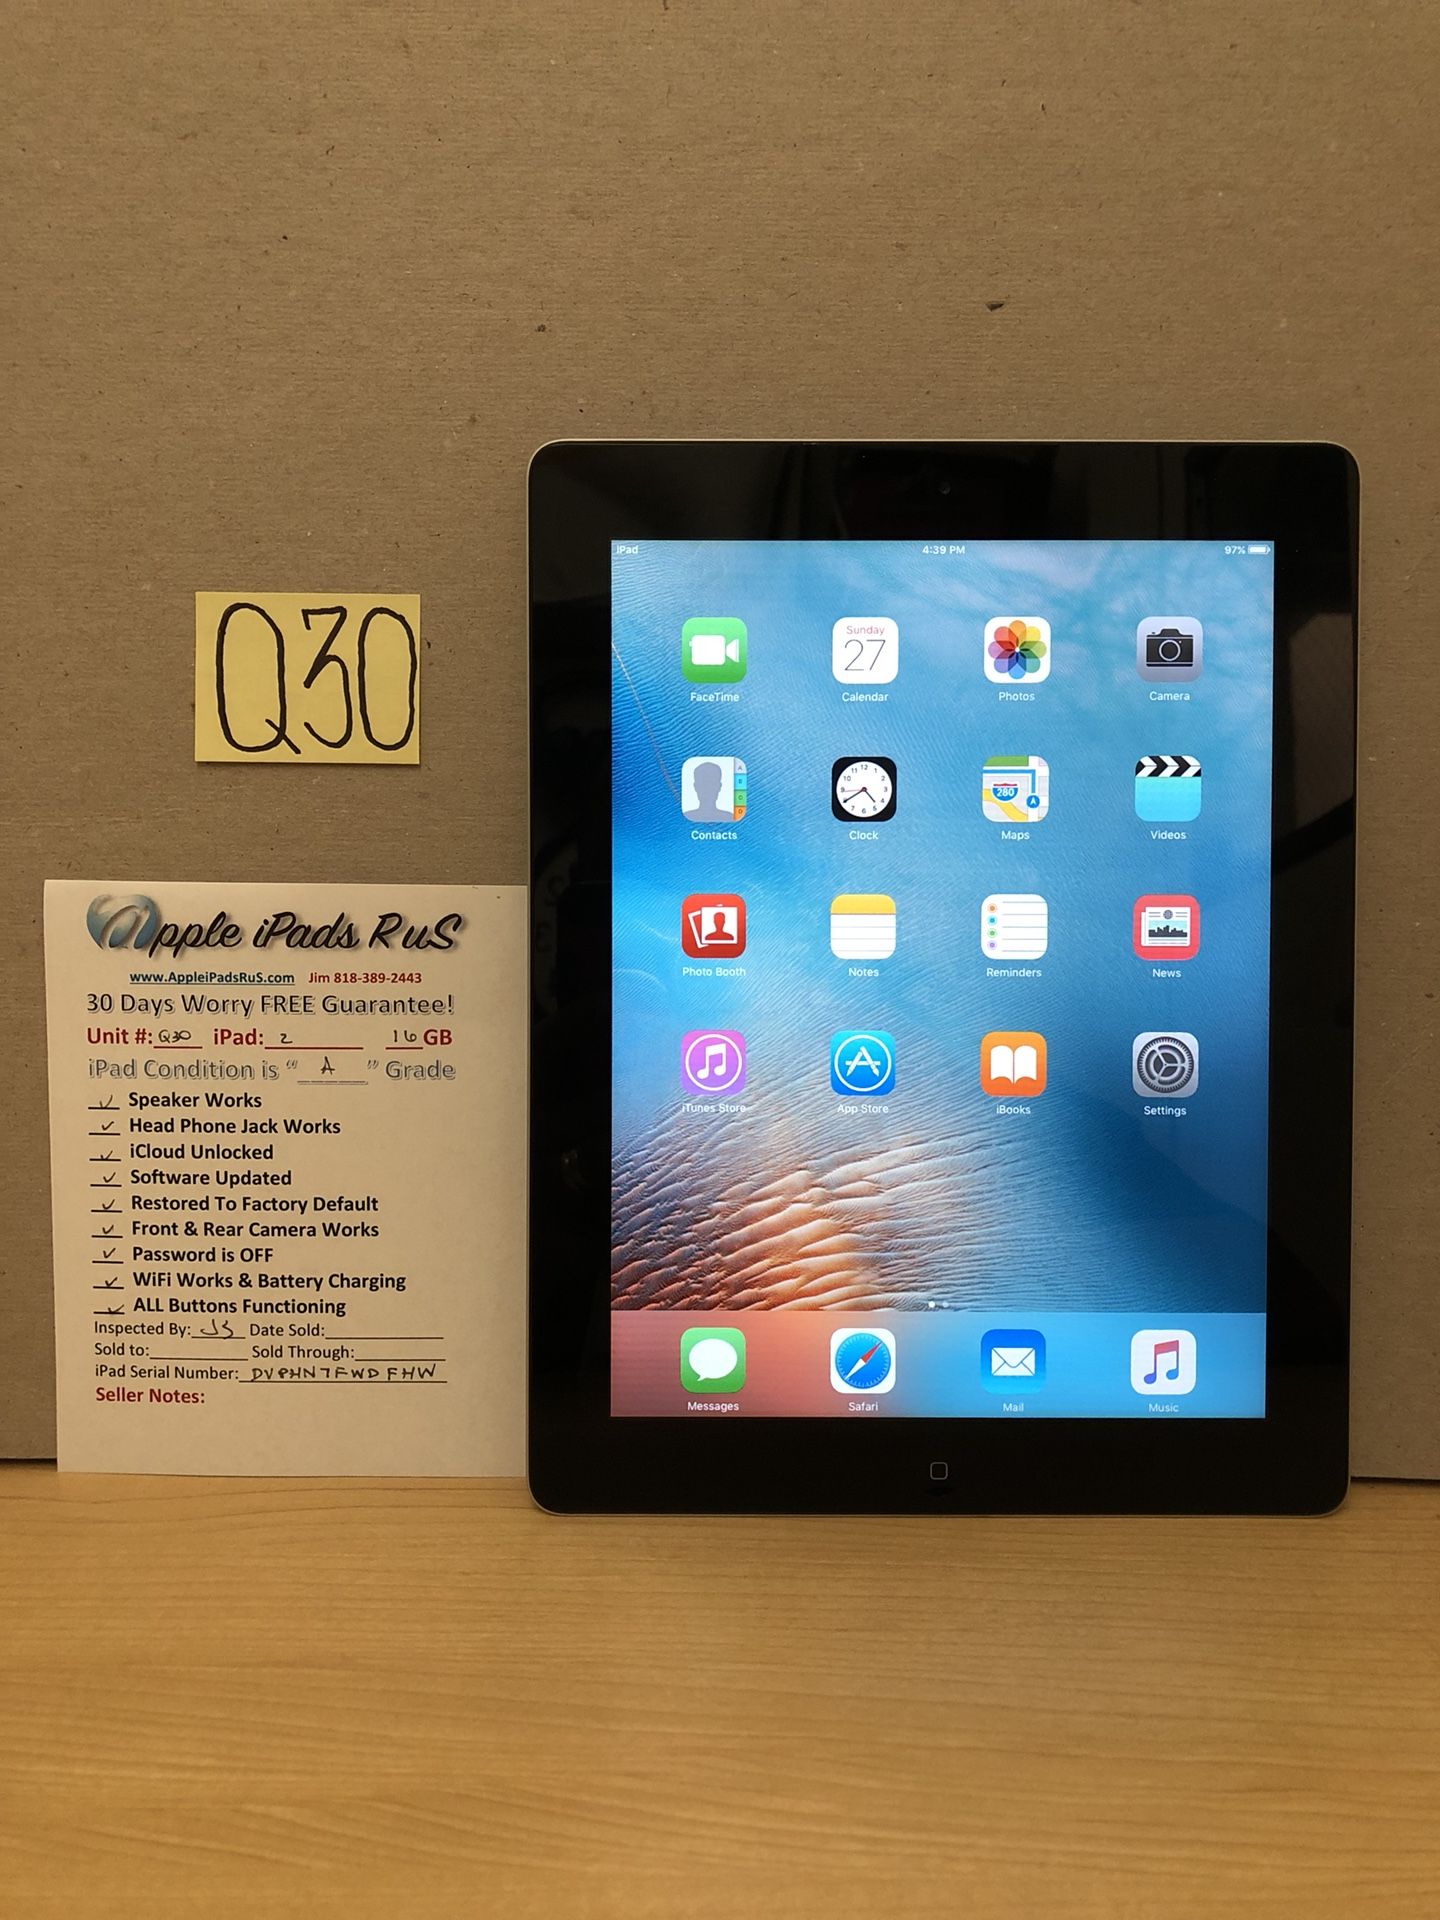 Q30 - iPad 2 16GB